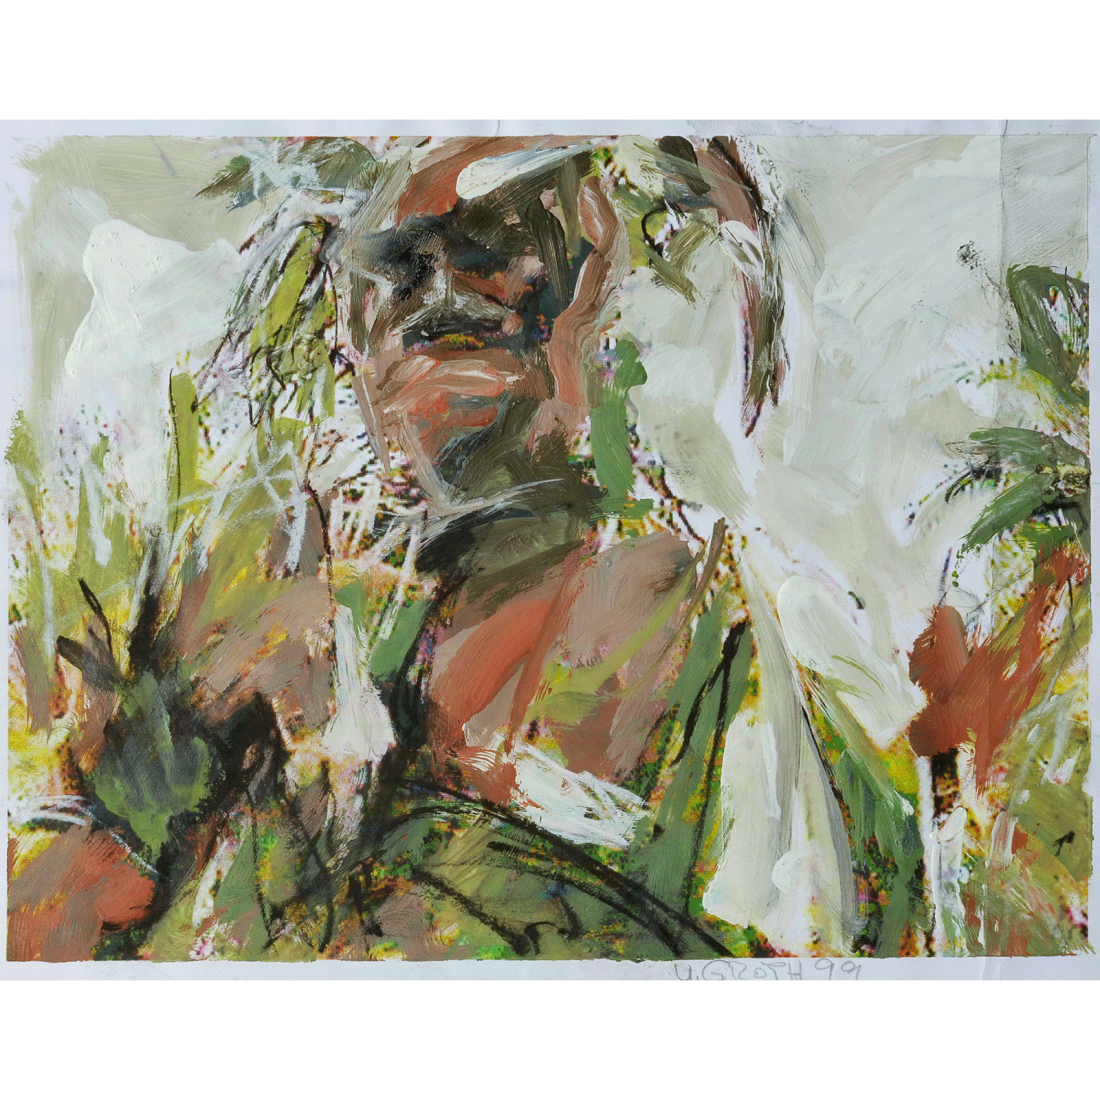 Mann im Blattschmuck 3, 1999, 21x28cm, Foto, Acrylfarbe, Kohle und Kreide auf Papier